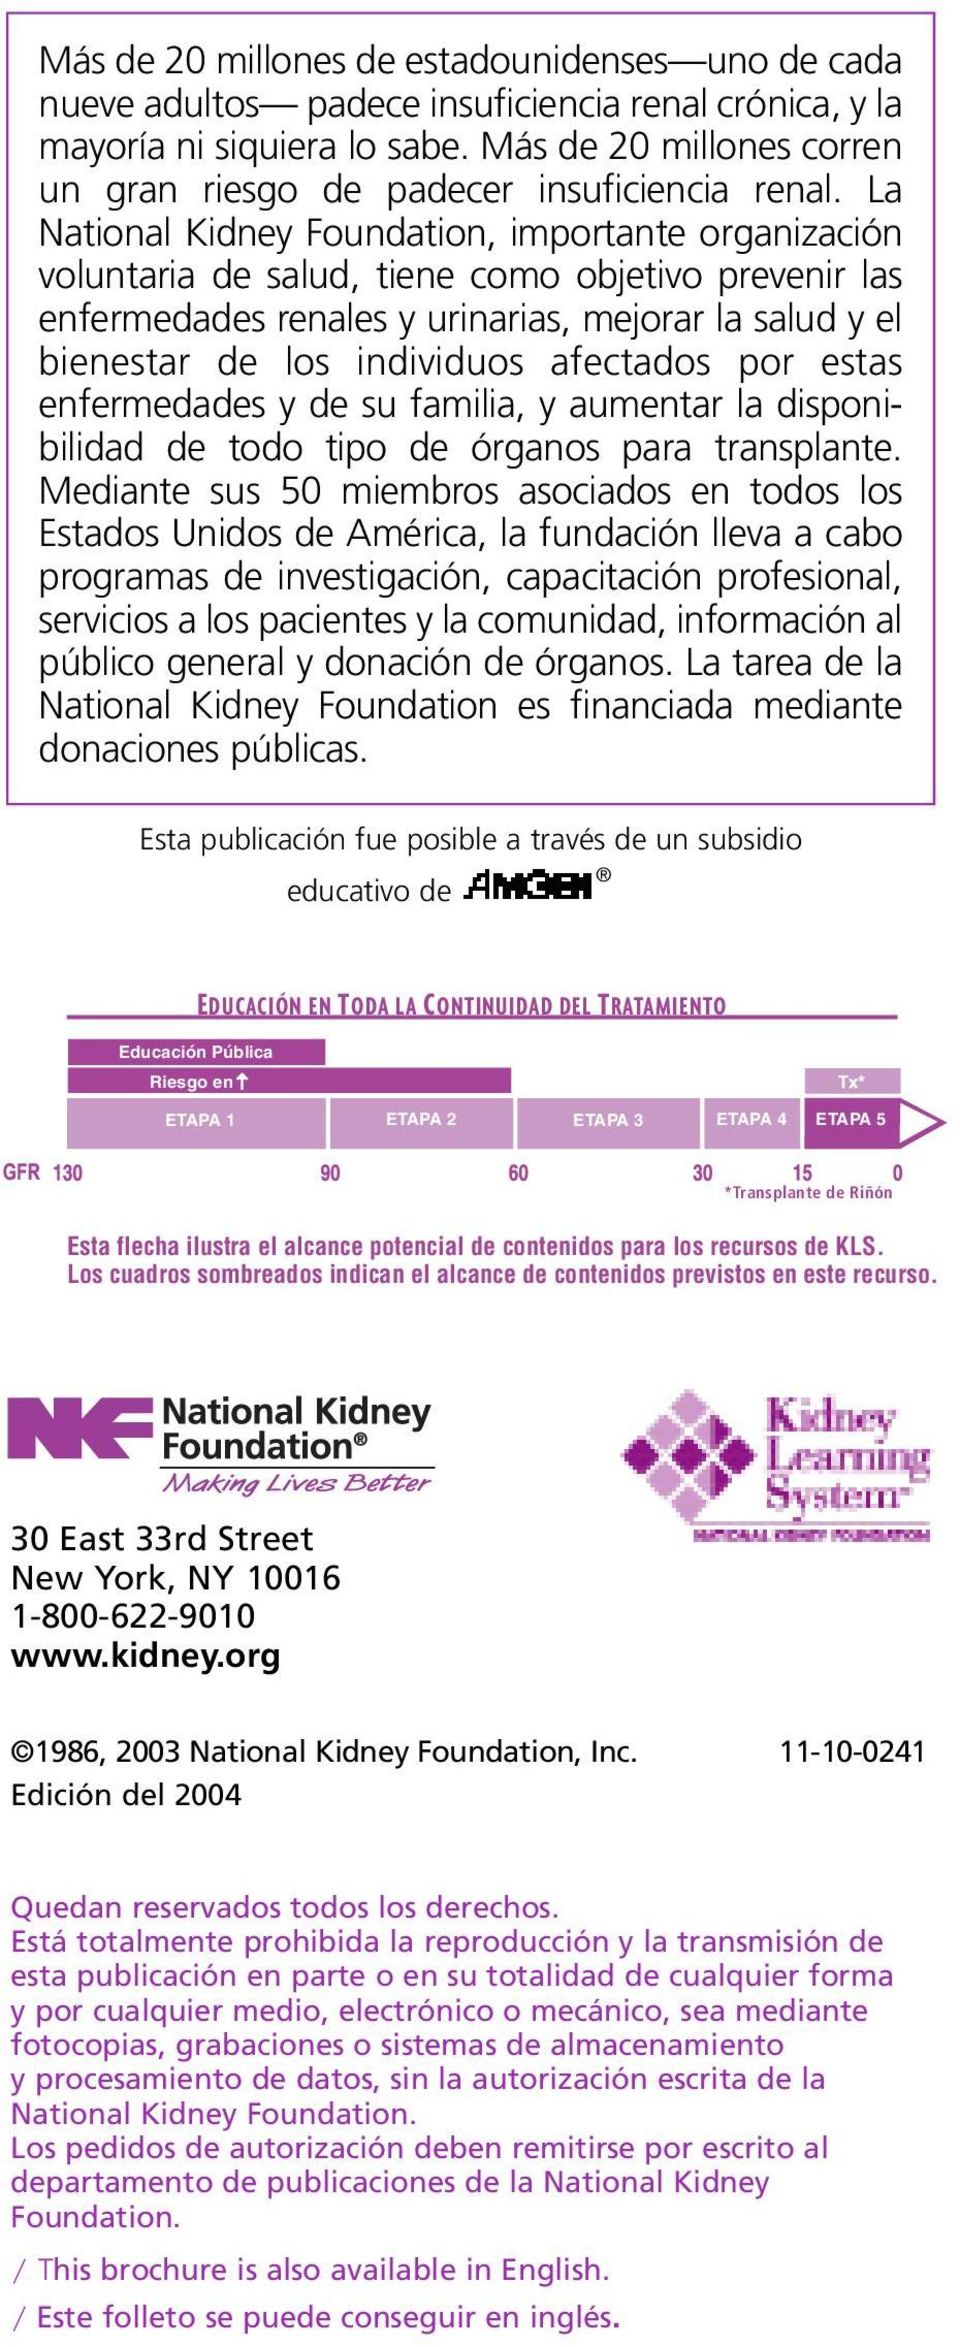 La National Kidney Foundation, importante organización voluntaria de salud, tiene como objetivo prevenir las enfermedades renales y urinarias, mejorar la salud y el bienestar de los individuos